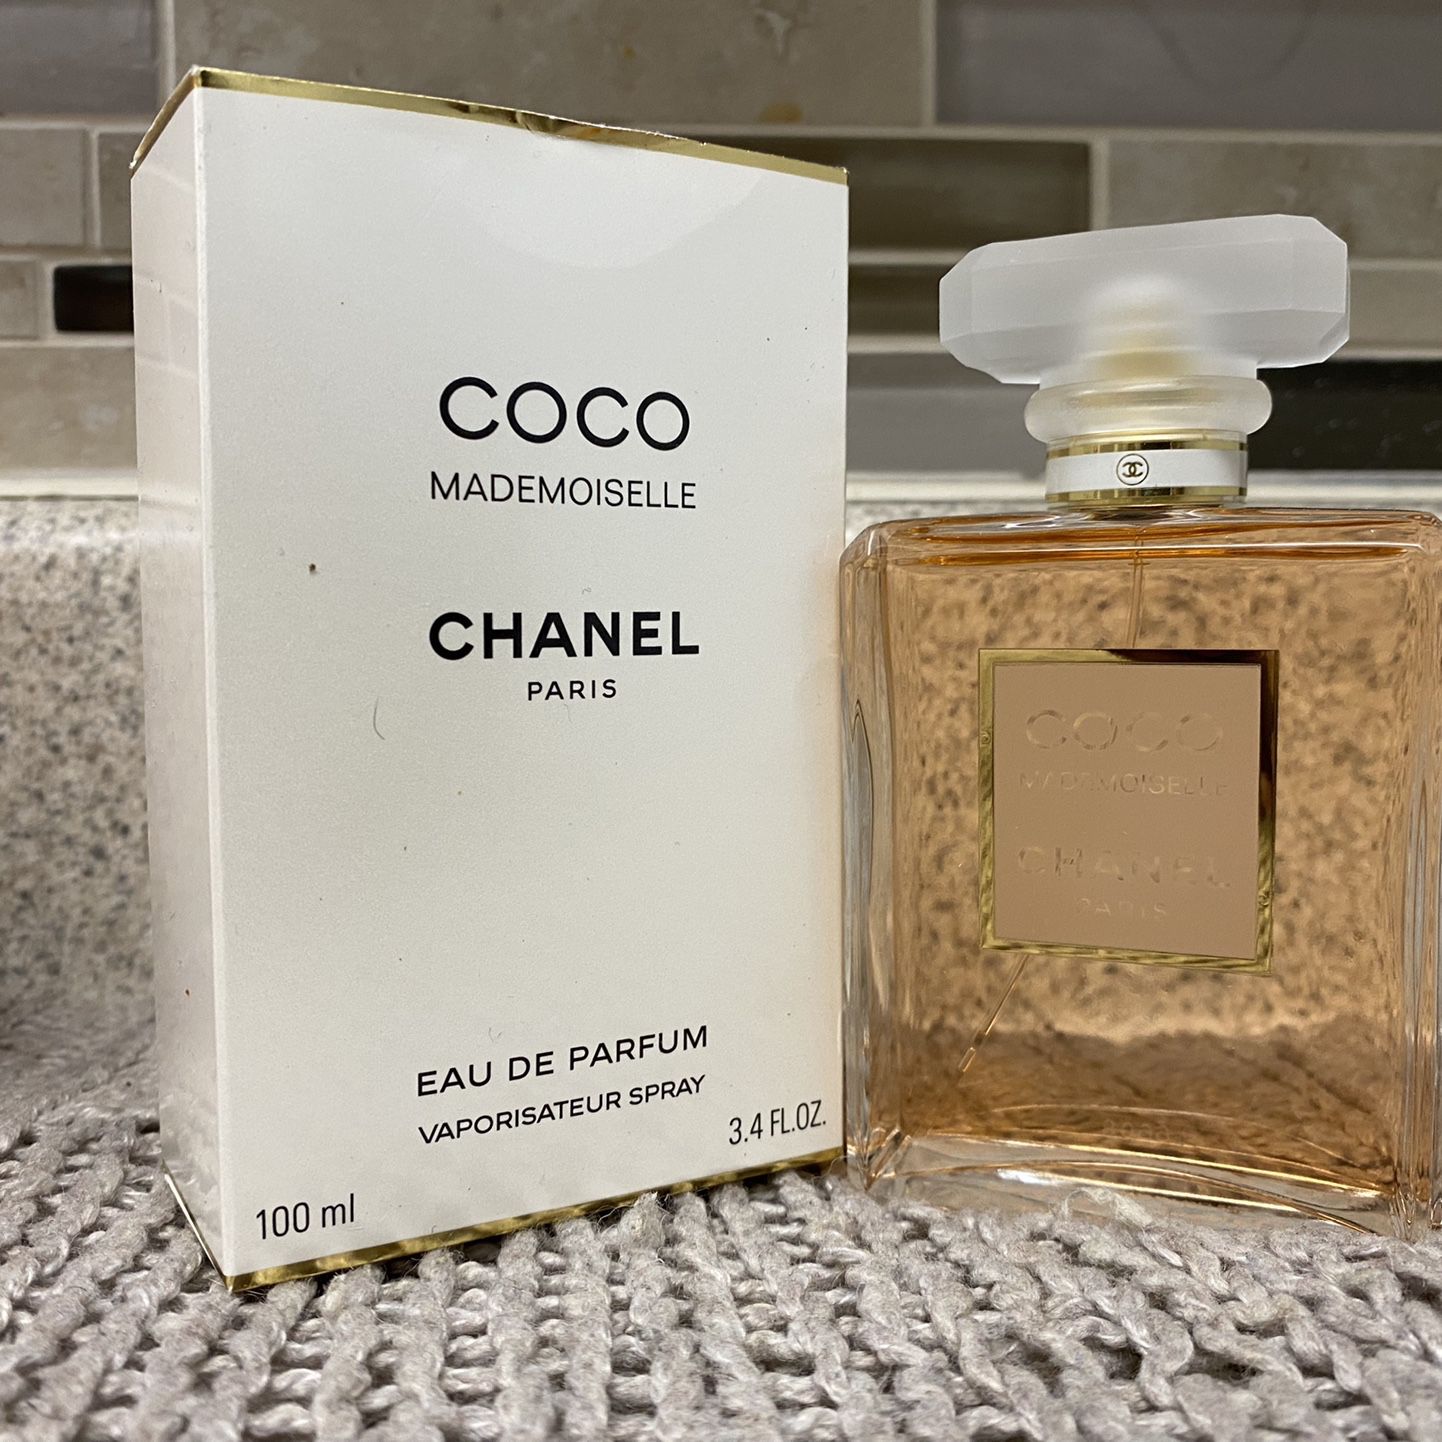 coco mademoiselle chanel eau de parfum 3.4